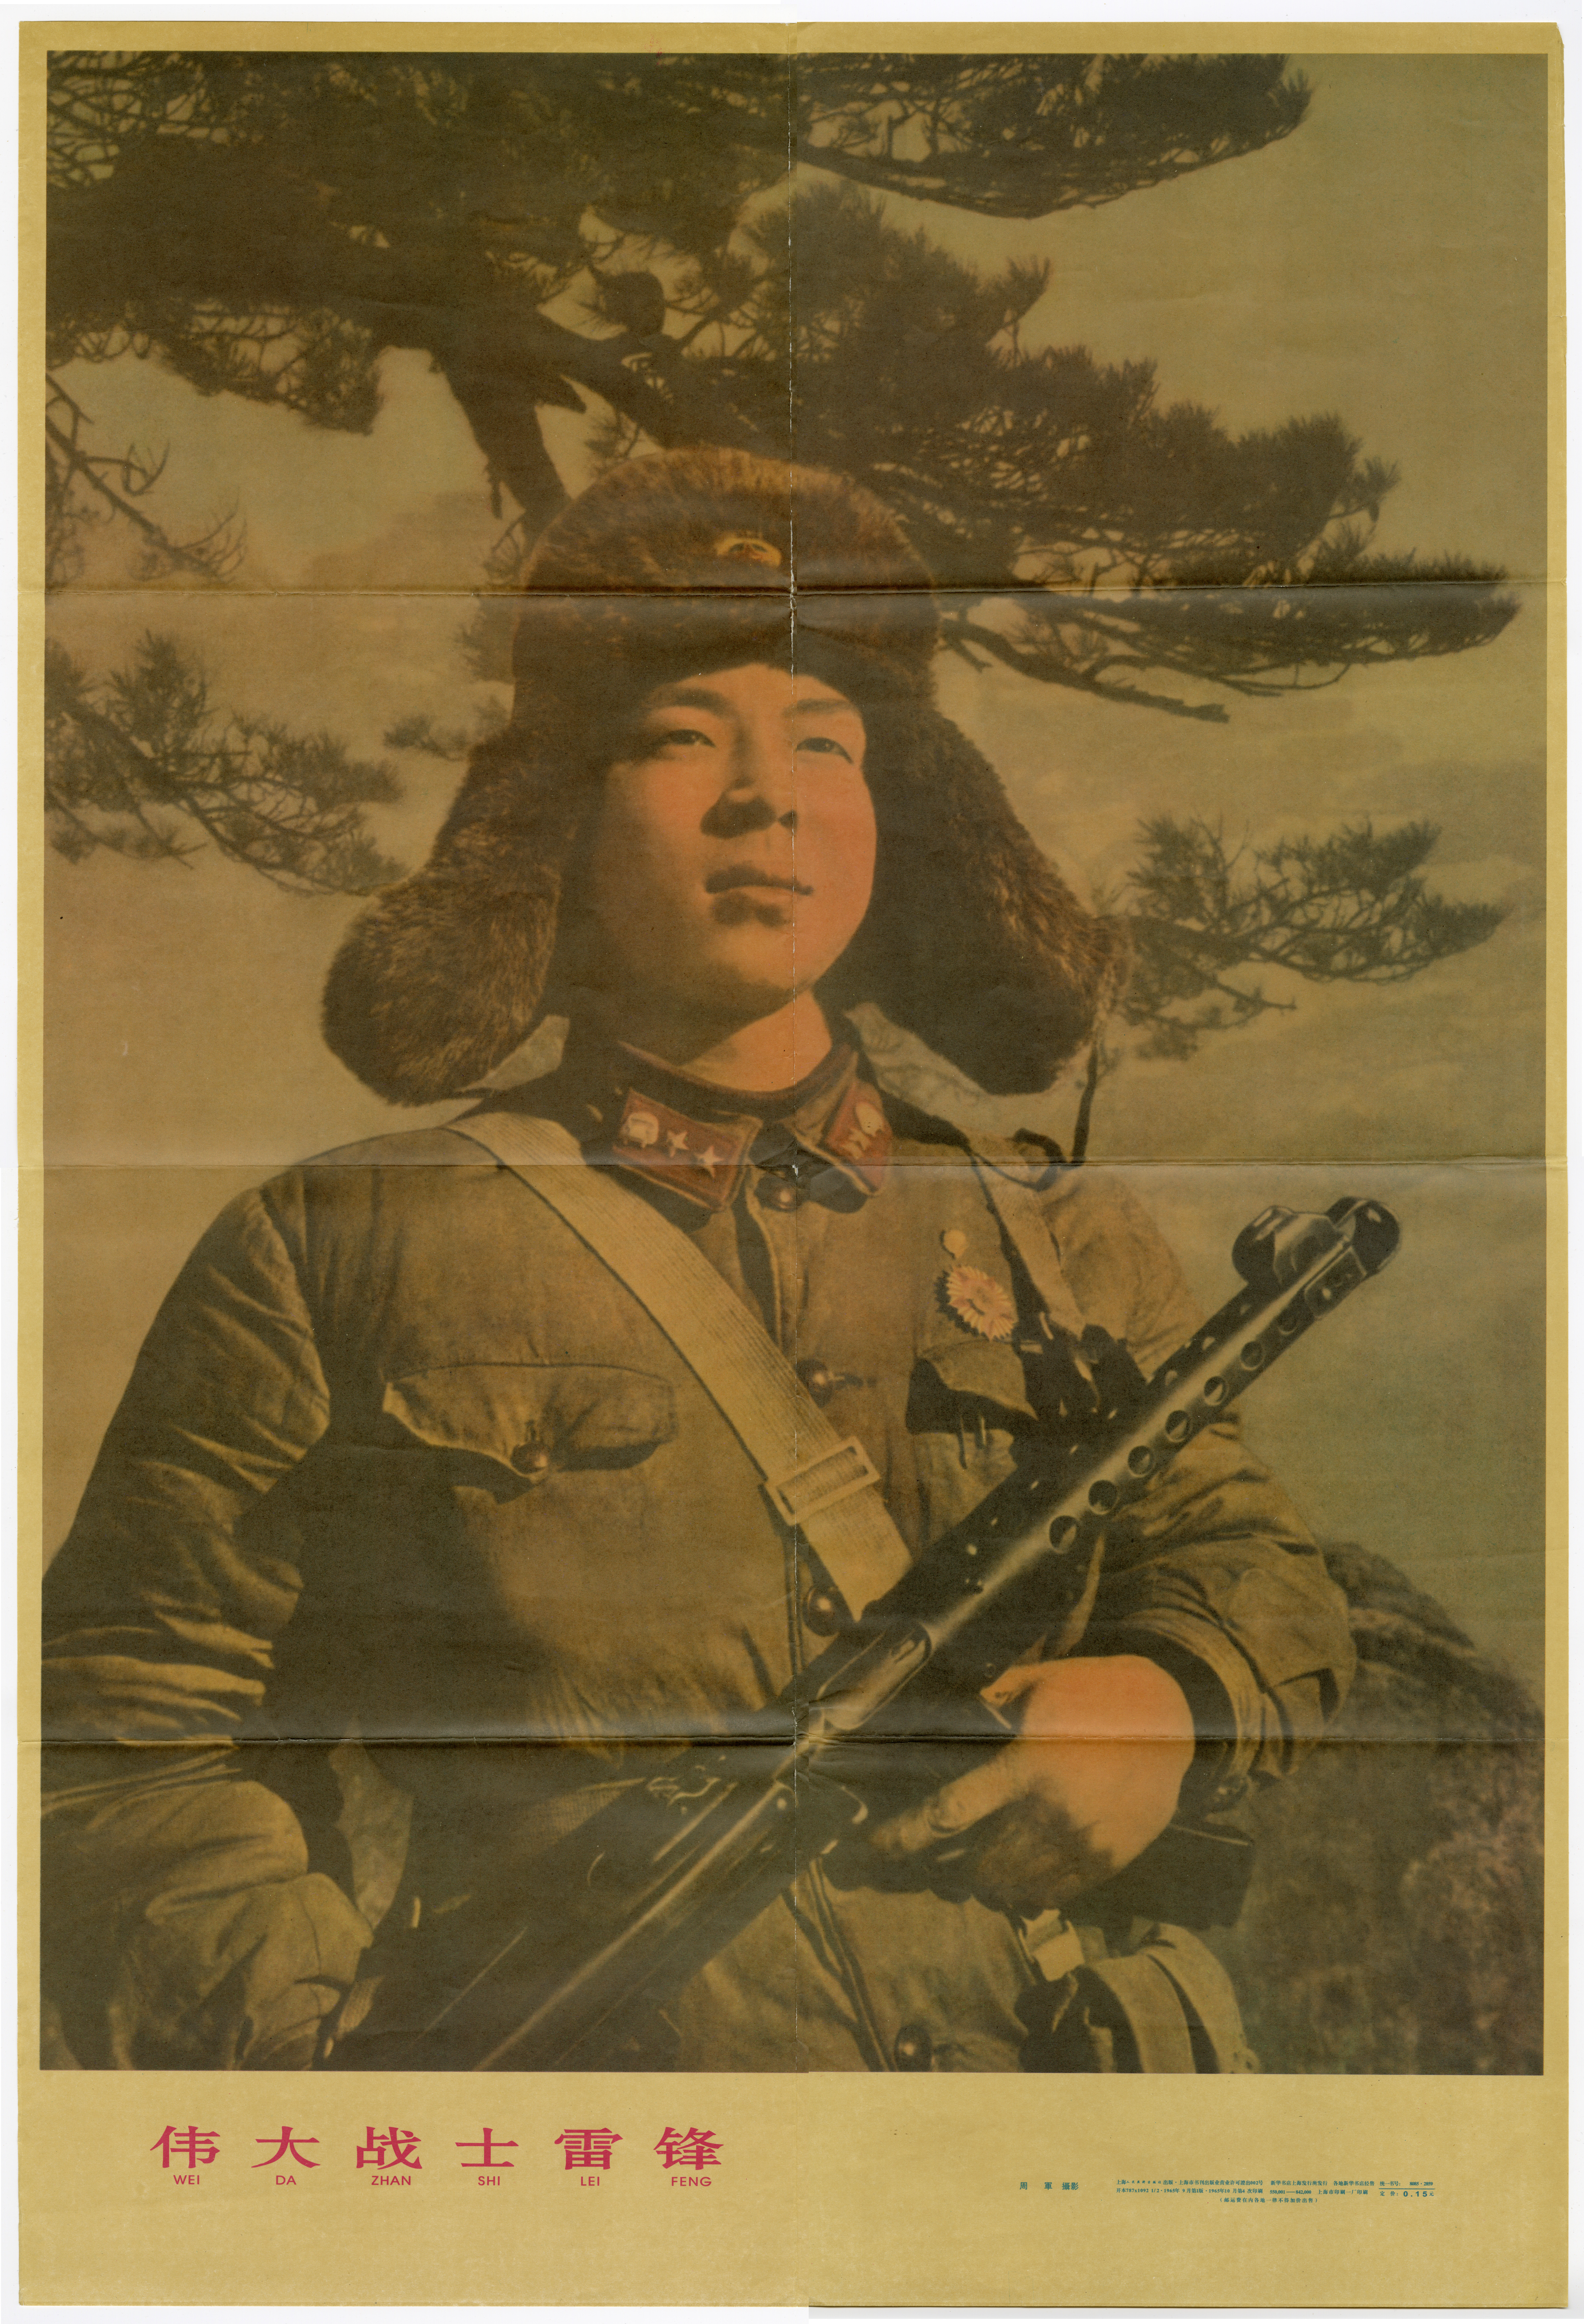 雷锋海报，尺寸约为 30"x20"，1965 年在上海印制。由 Stefan Chiarantano 捐赠，美国华人博物馆 (MOCA) 馆藏。